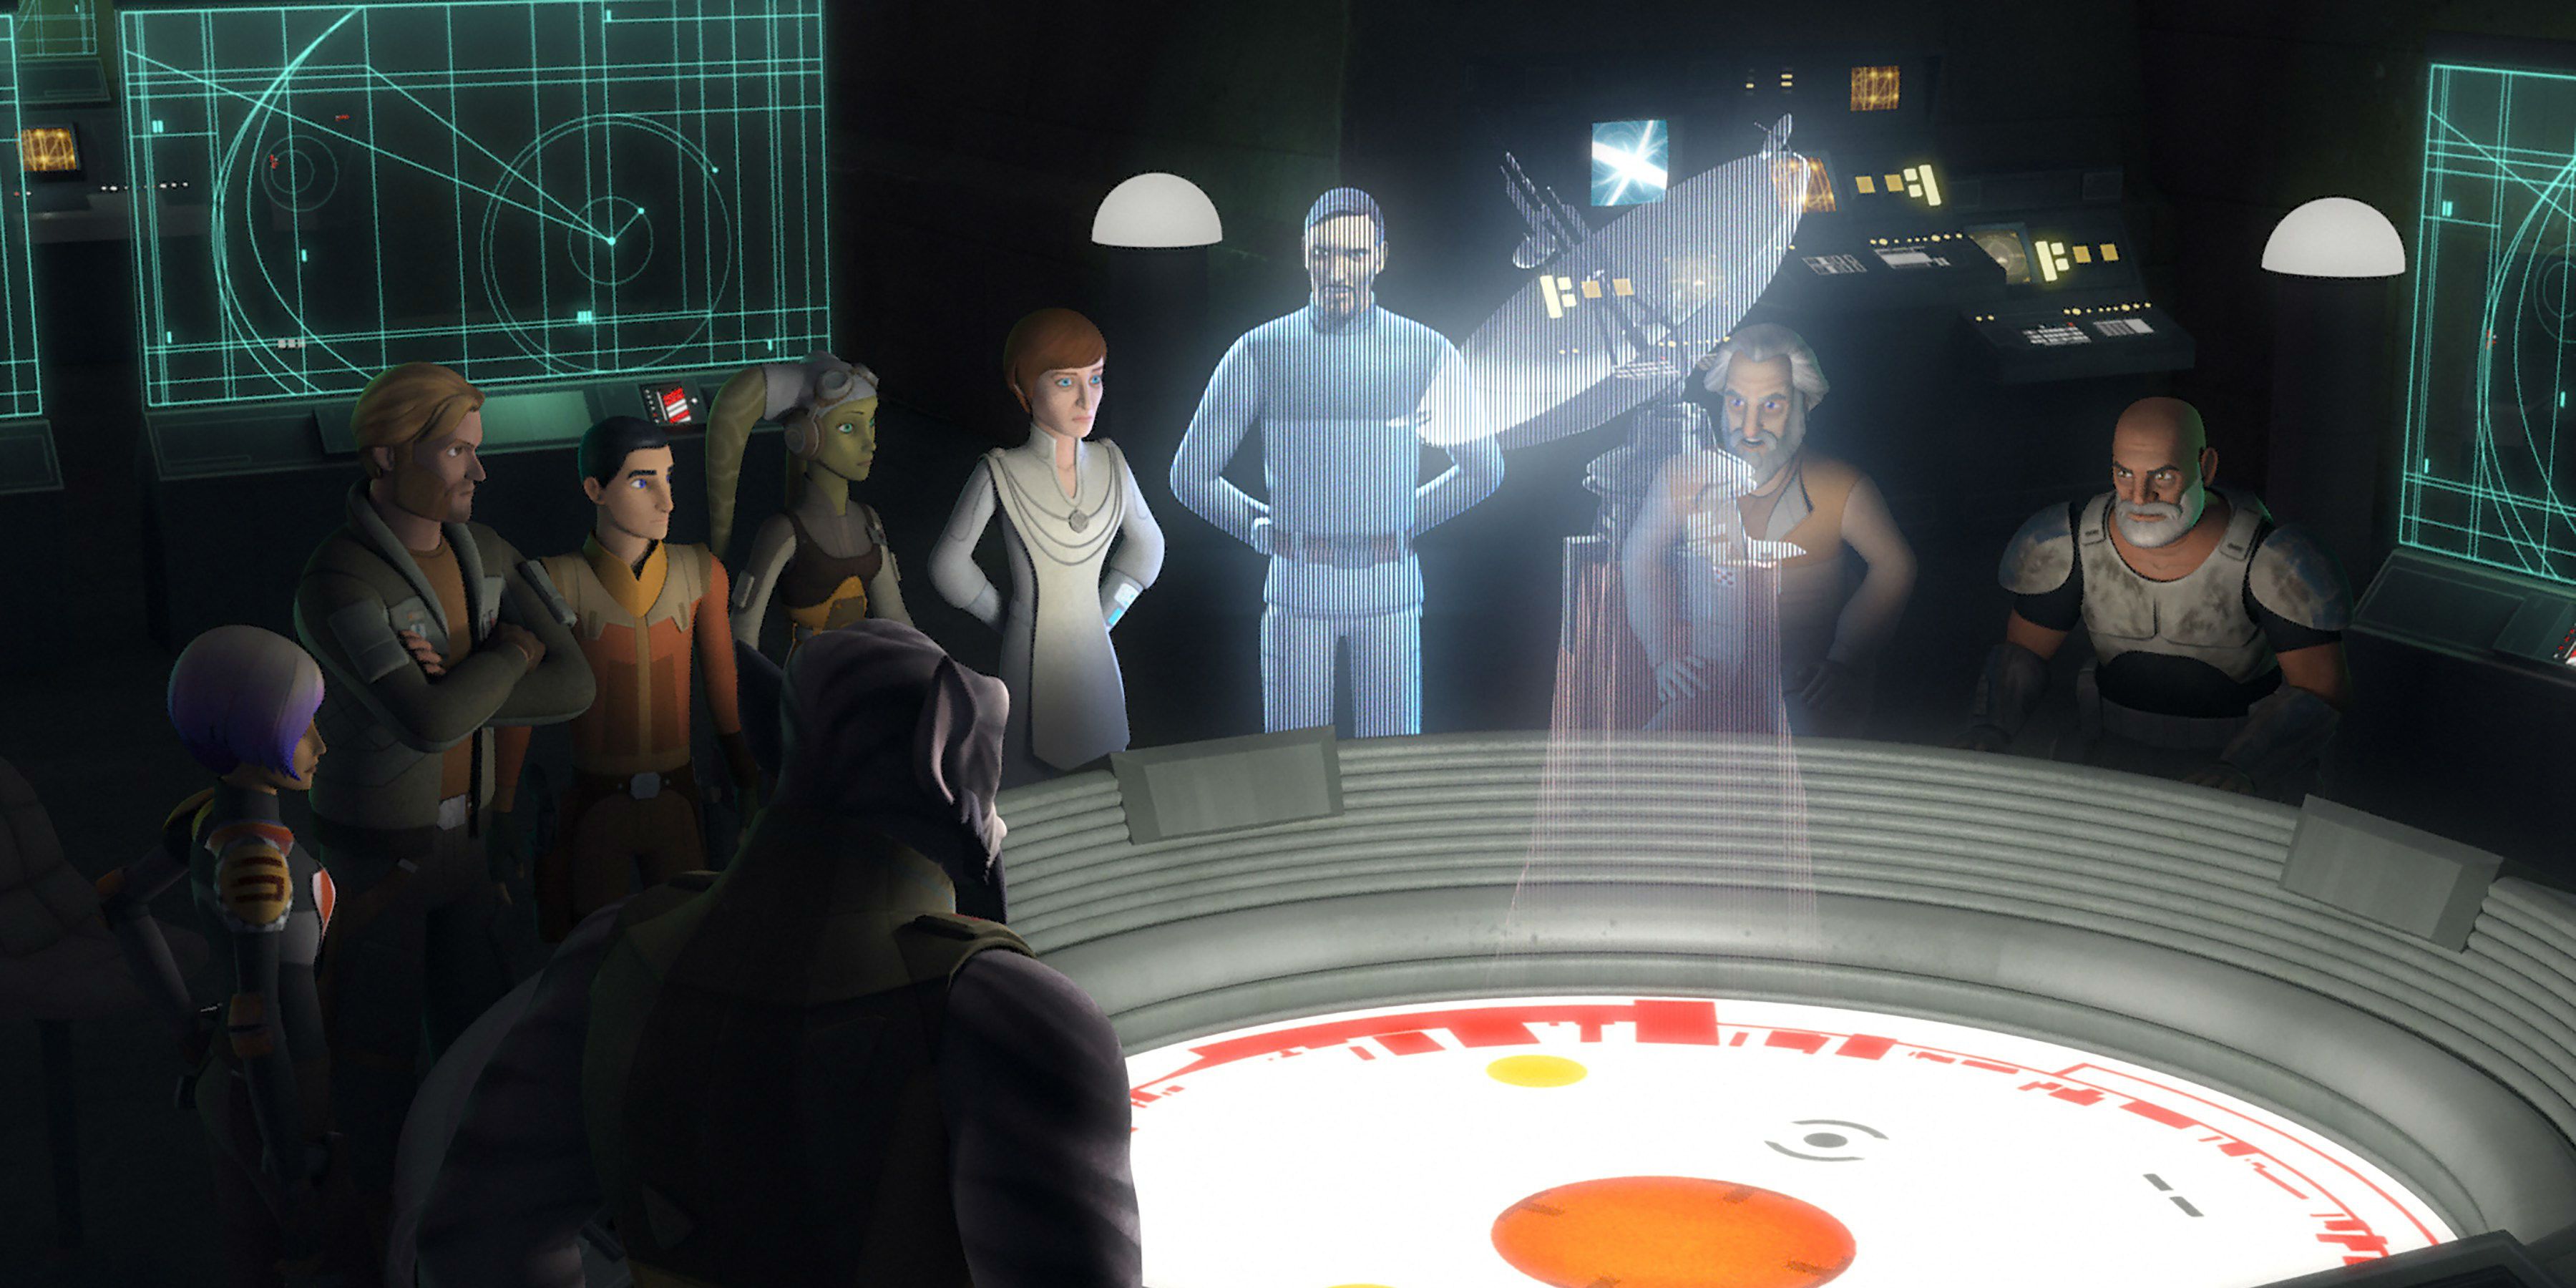 The Rebels meet on Yavin IV base in Star Wars Rebels